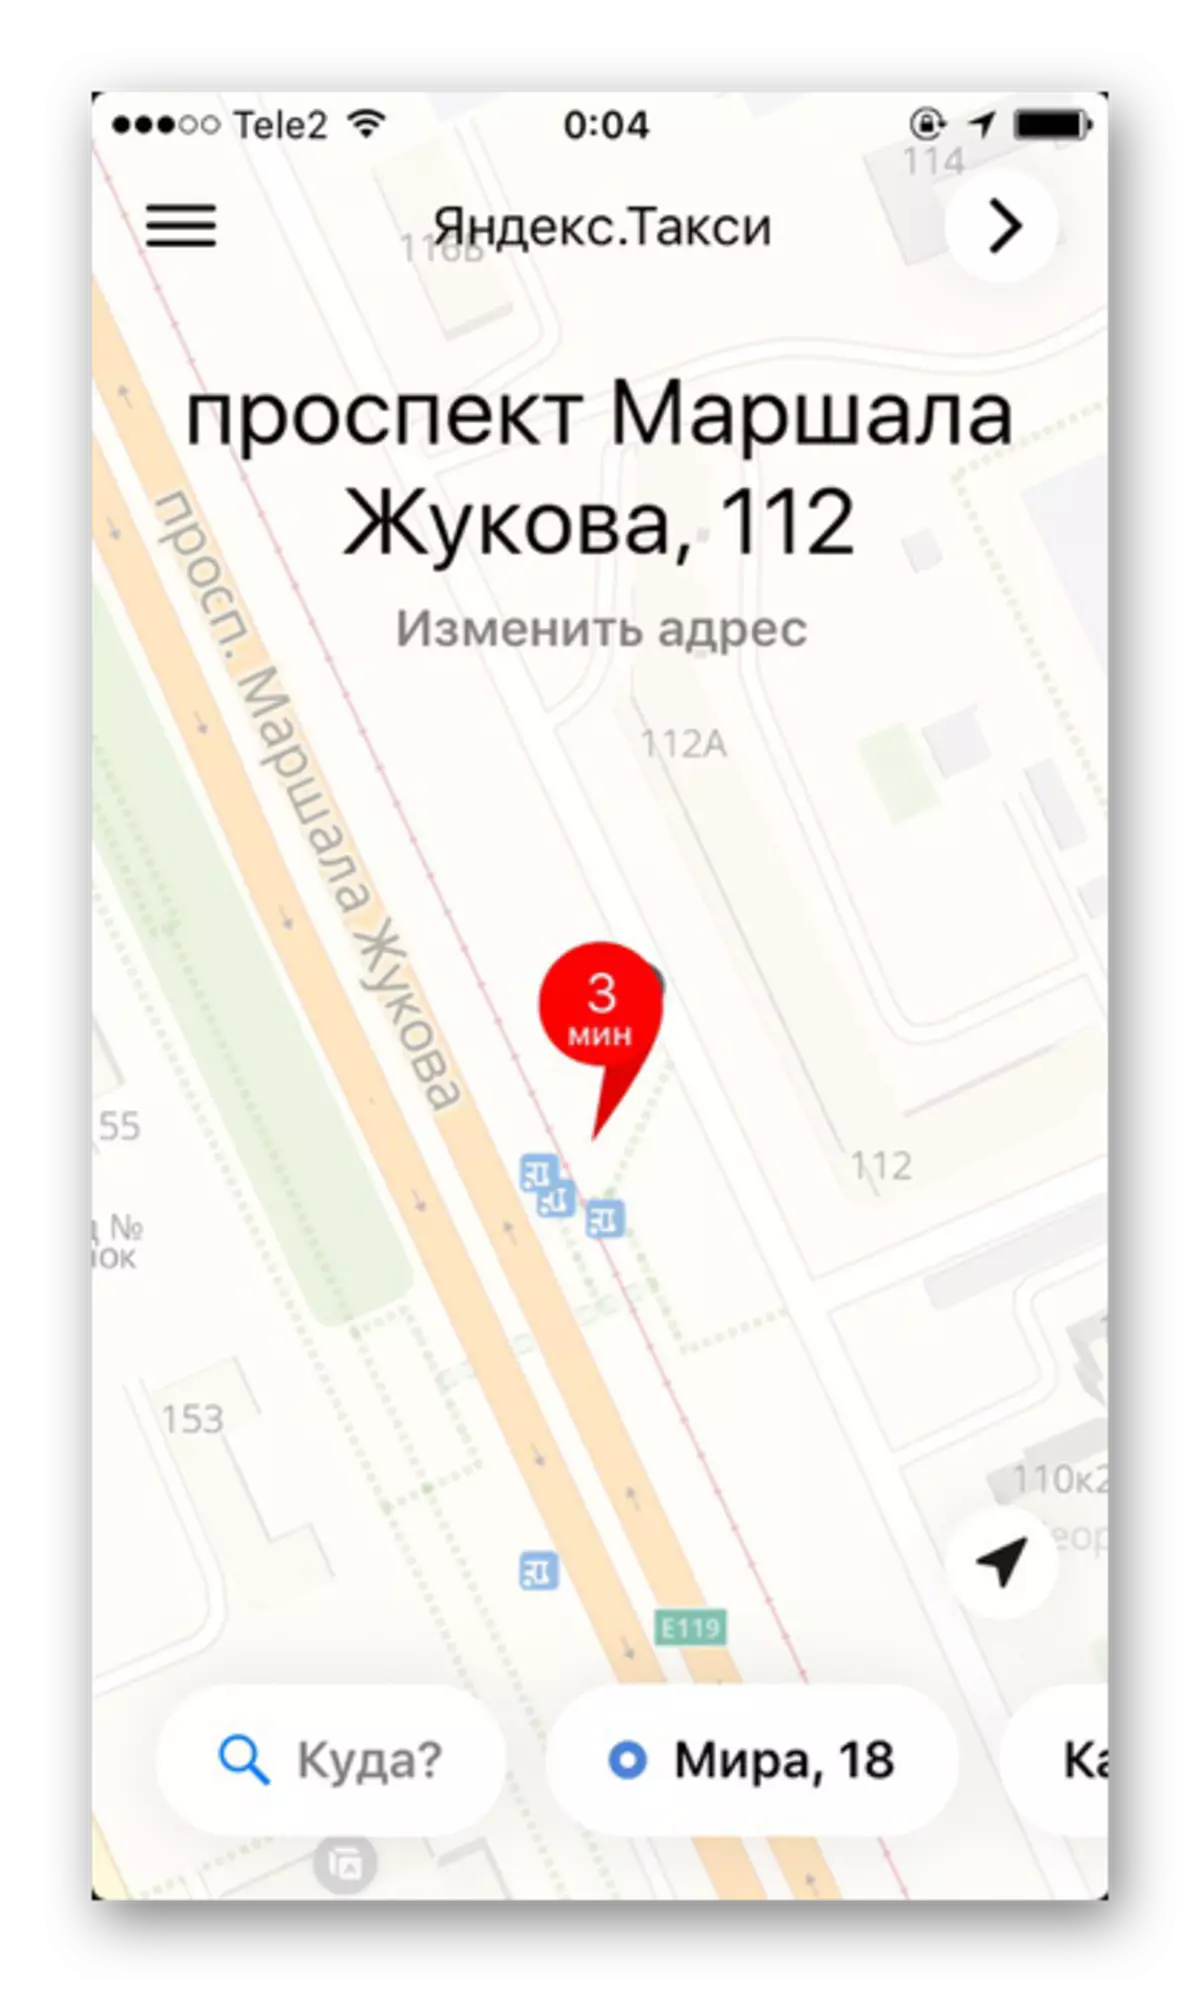 Map nke mpaghara ahụ nwere nkọwa zuru ezu nke okporo ụzọ na ụlọ na Yandex.taxi na iPhone